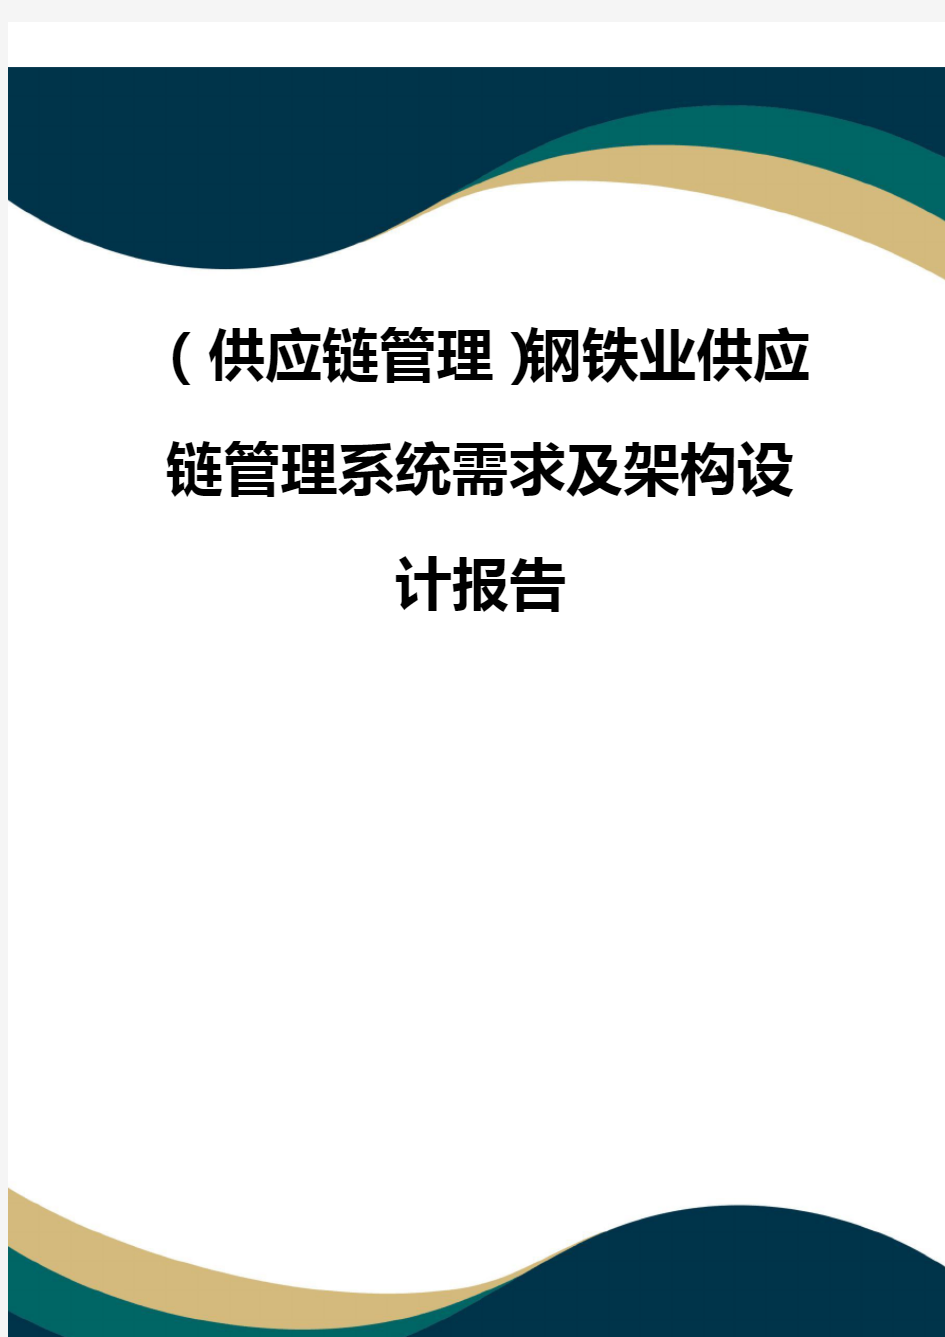 (供应链管理)钢铁业供应链管理系统需求及架构设计报告(品质)